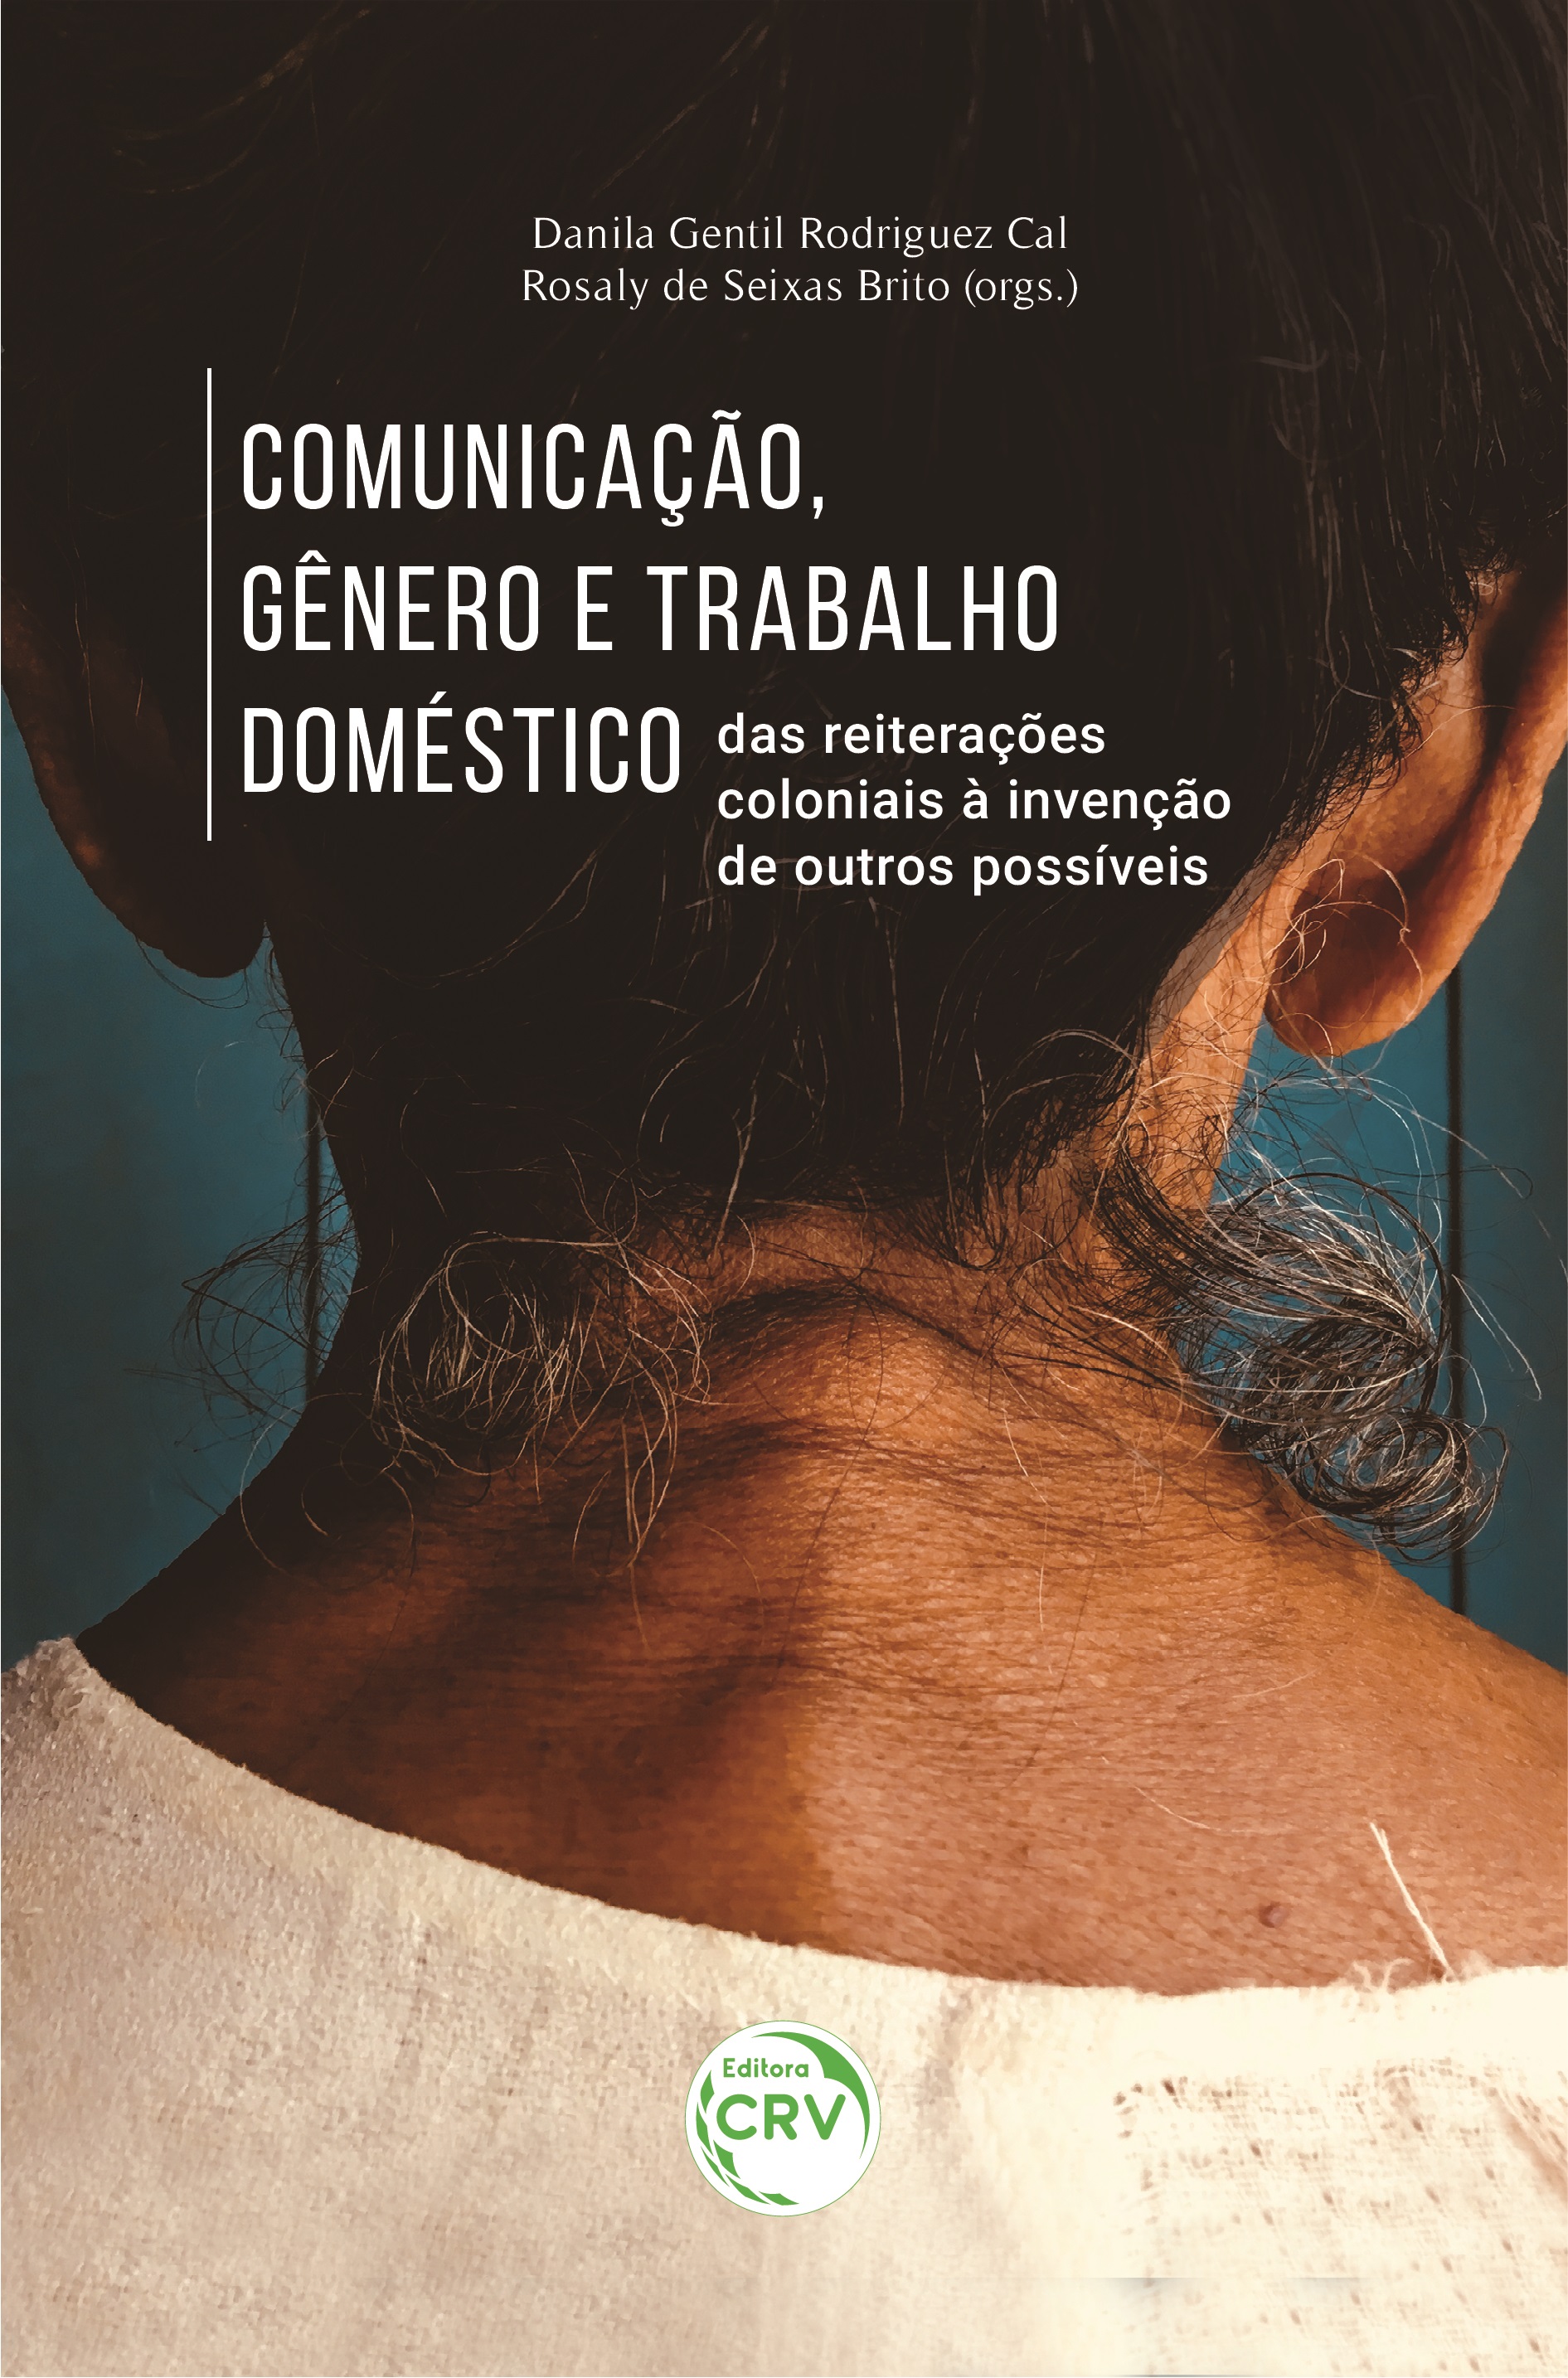 Capa do livro "Comunicação, gênero e trabalho doméstico". Fonte: https://www.editoracrv.com.br/produtos/detalhes/35631-crv